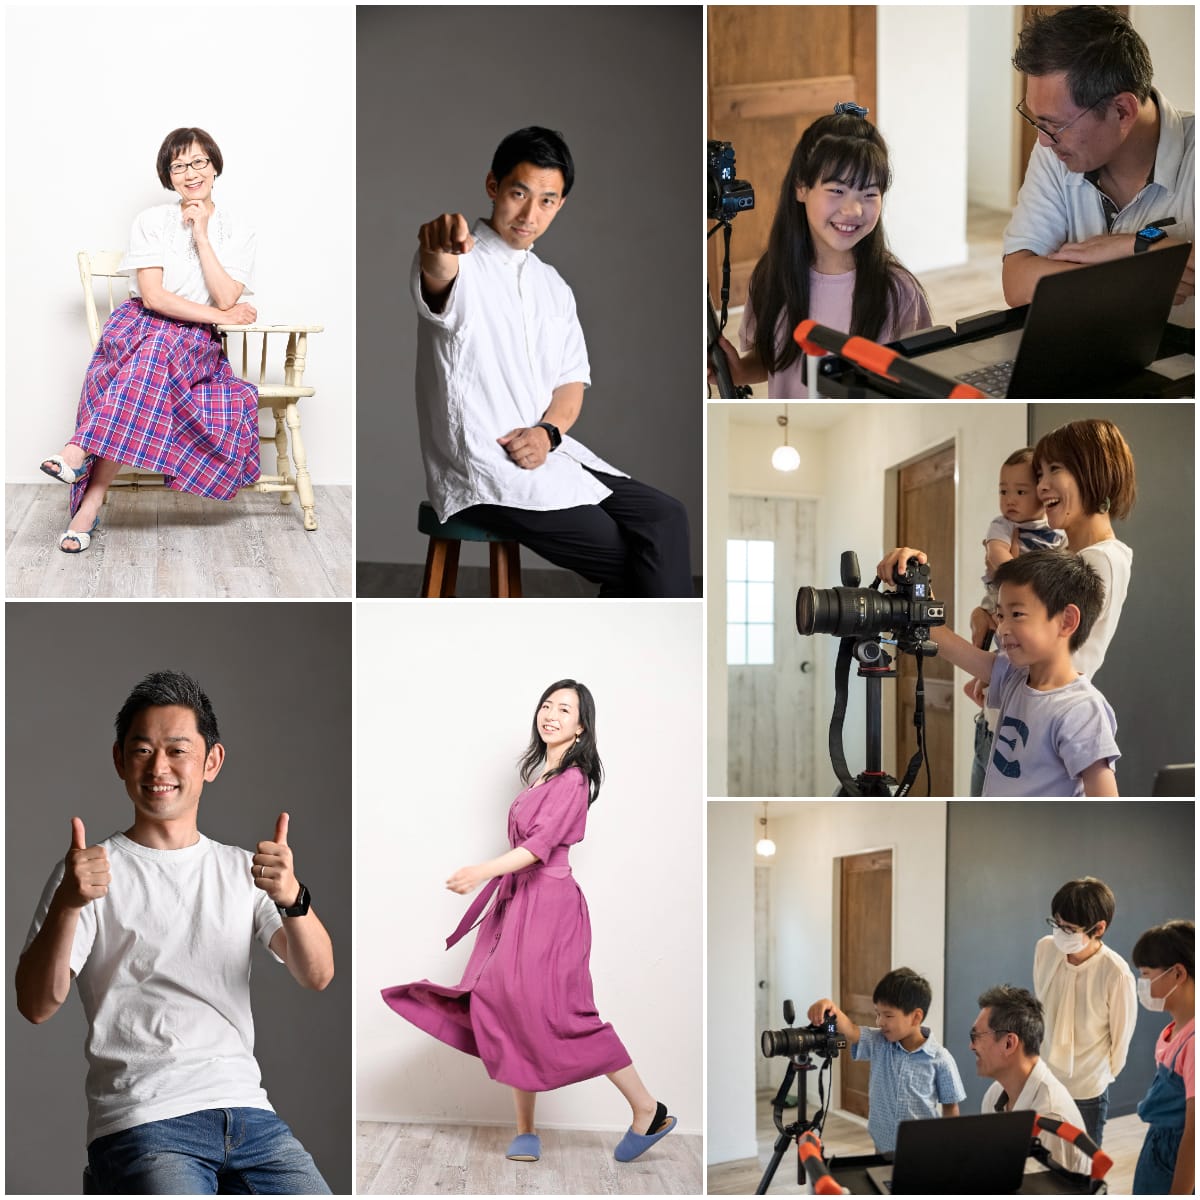 スキクエスト プロジェクト 【子供の夢を育むワークショップ･スキクエスト】第10回「カメラマンになって家族を撮ろう!」